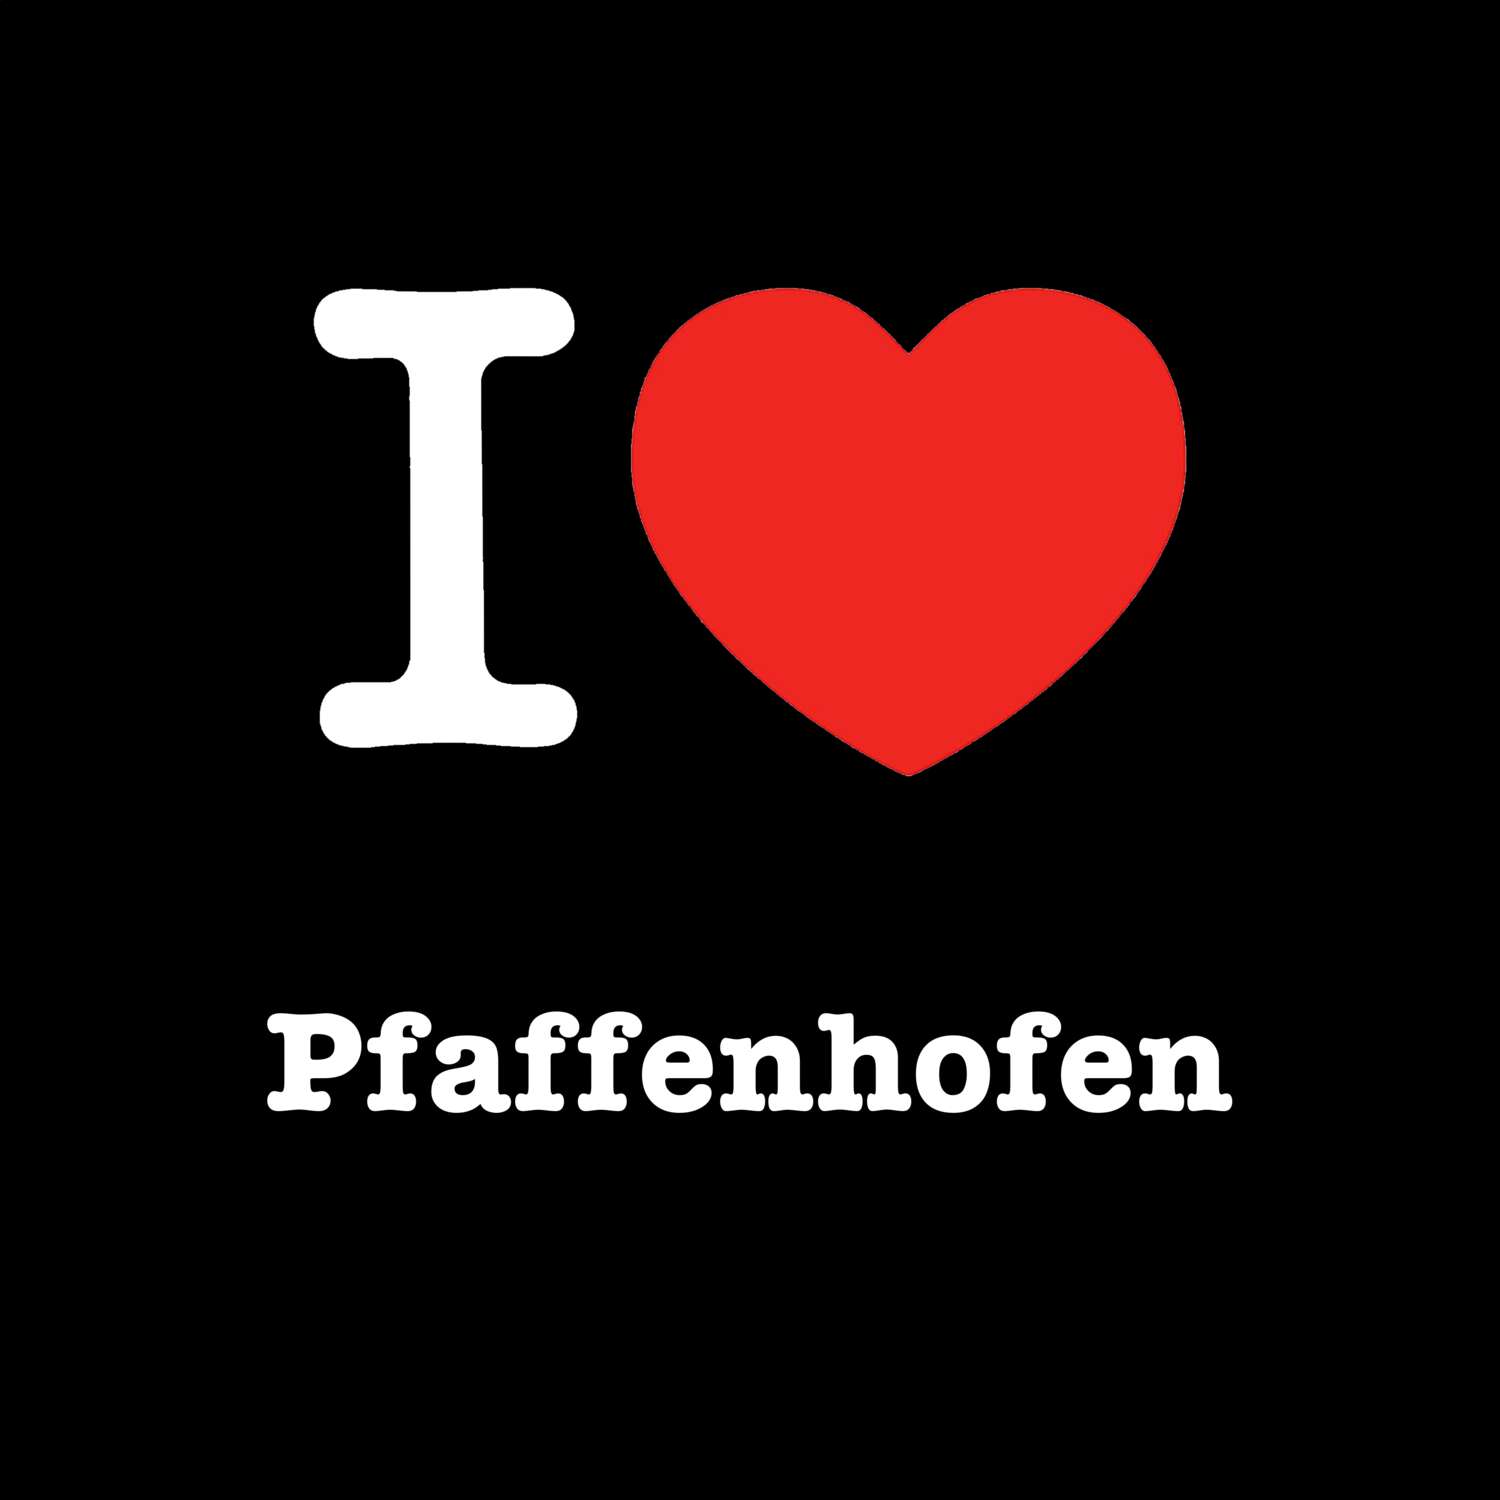 Pfaffenhofen T-Shirt »I love«